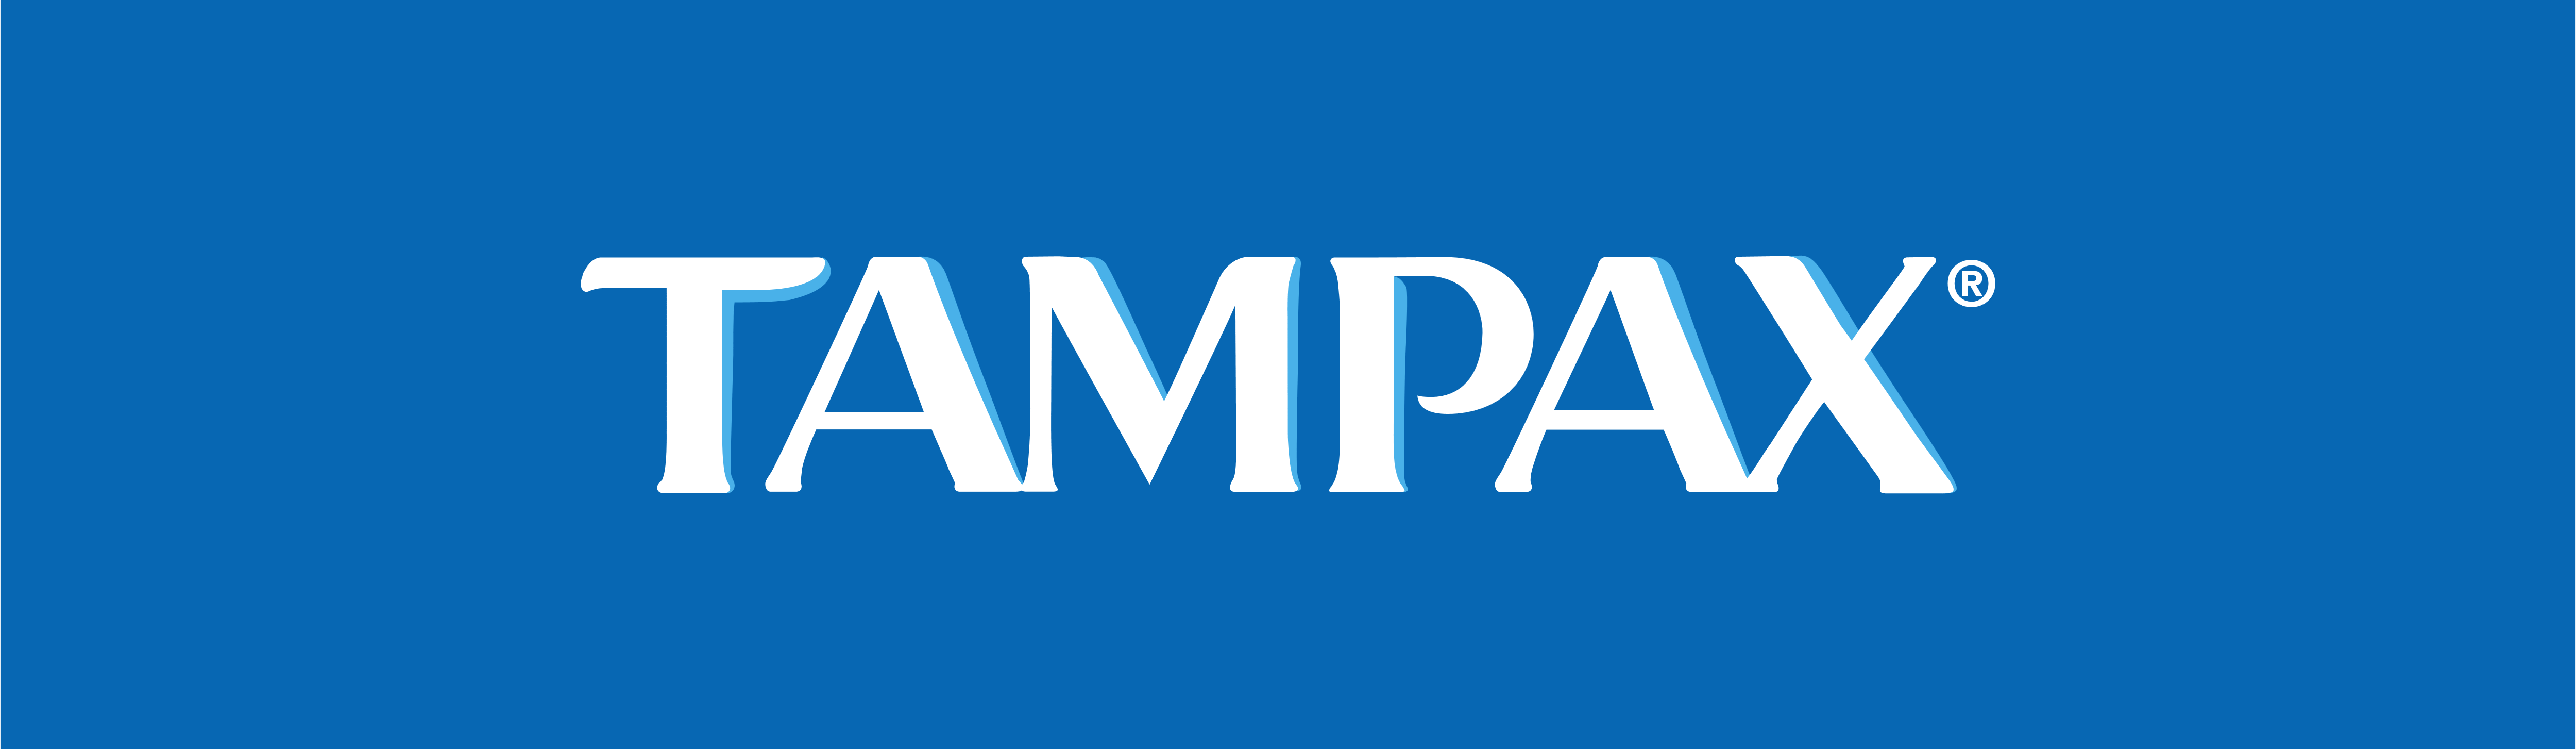 Tampax Logo - Tampax